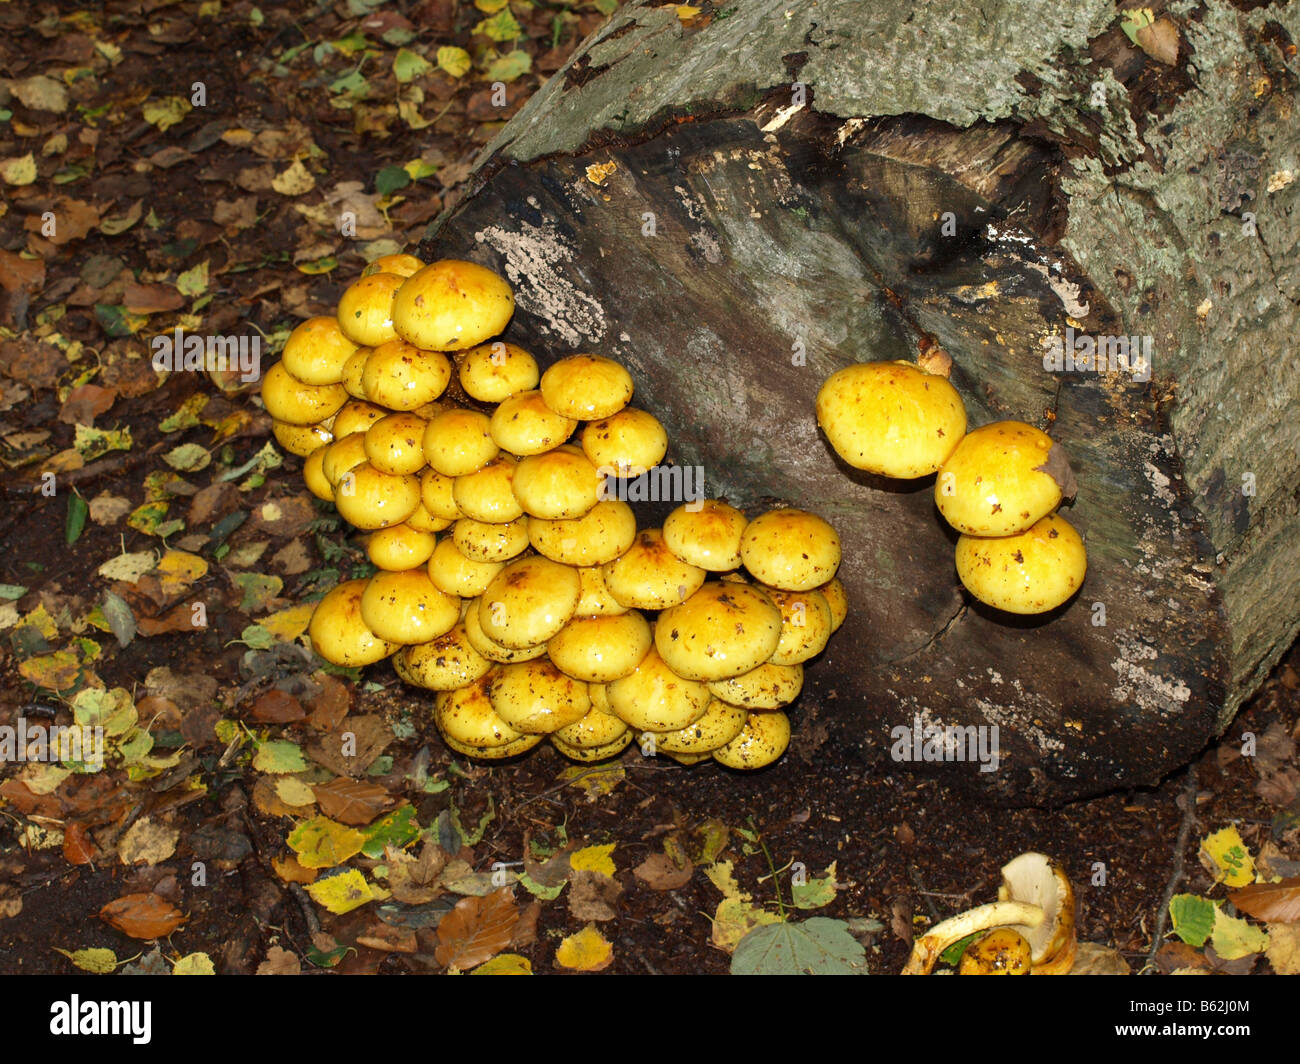 Yellow fungi florishing on decaying wood. OLYMPUS DIGITAL CAMERA Stock Photo